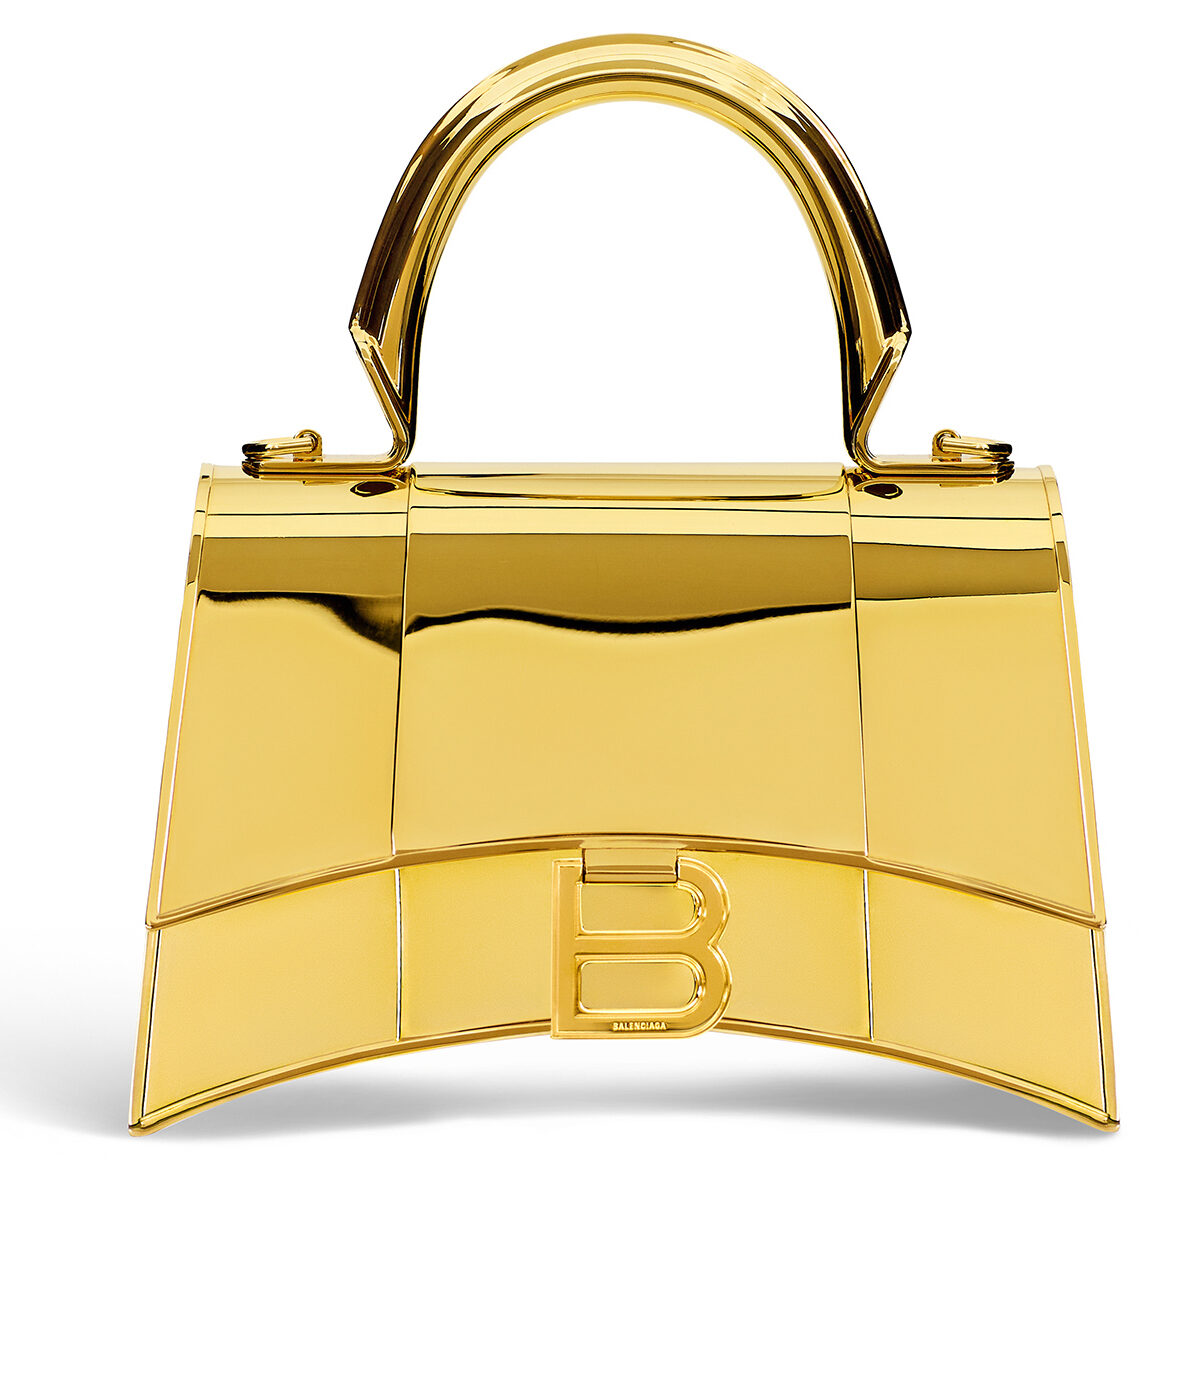 Balenciaga Fall-winter collection gold bag